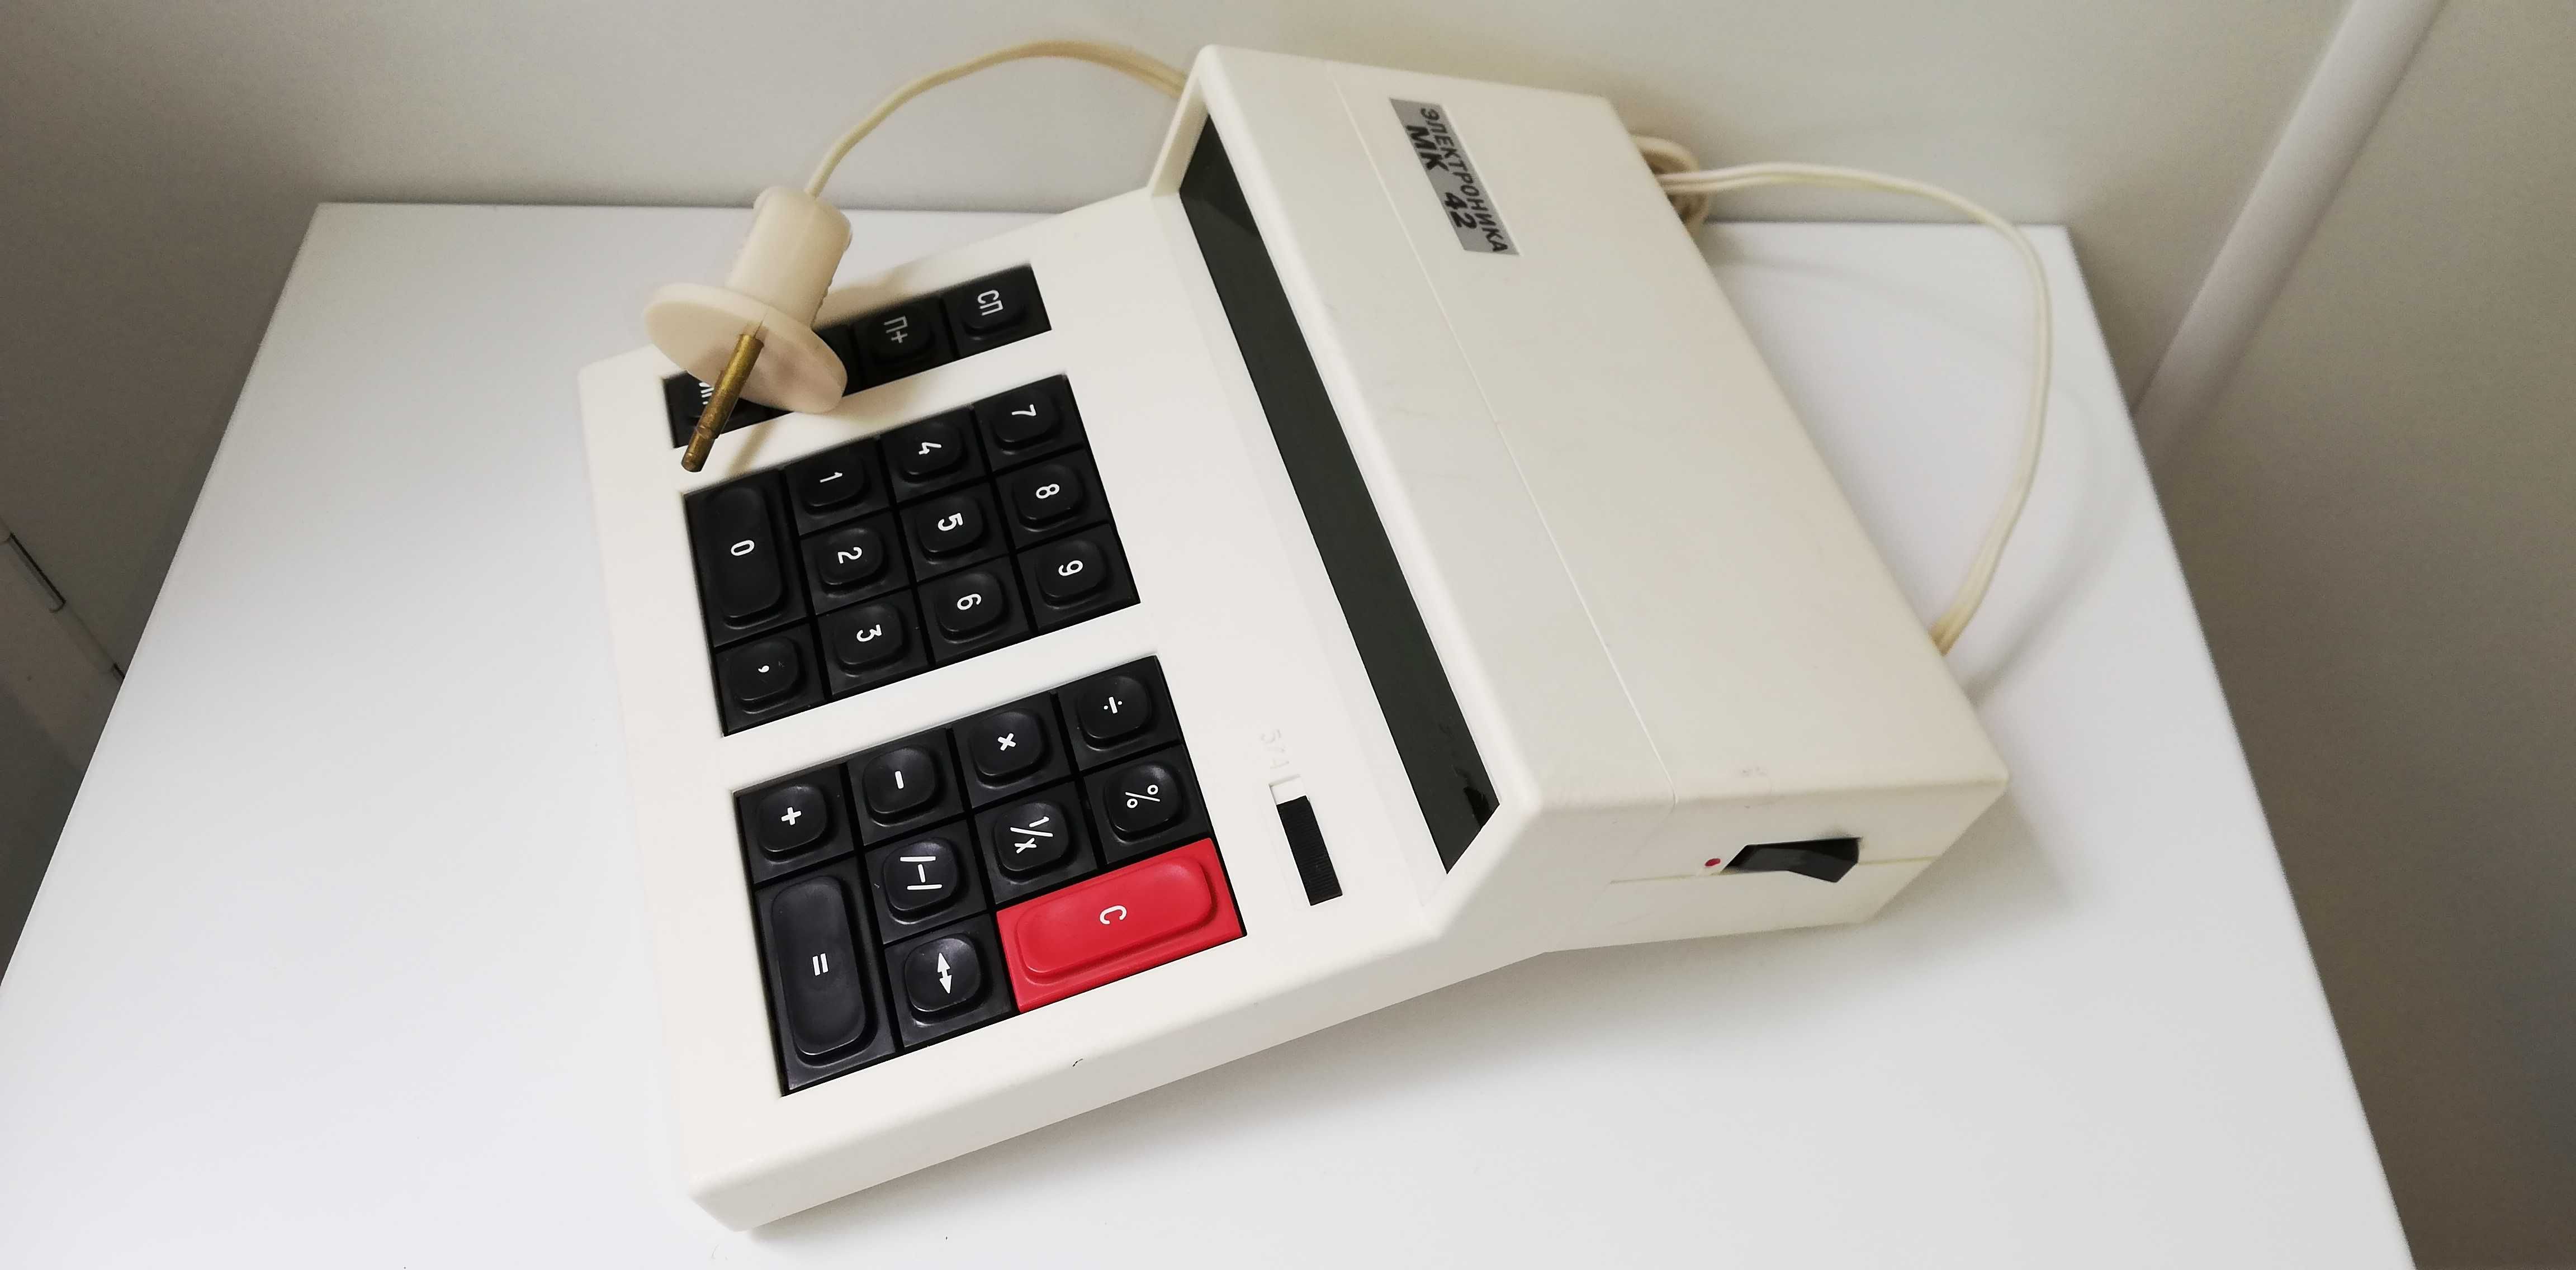 Калькулятор Электроника МК42 1988 г. новый СССР, оригинальная упаковка